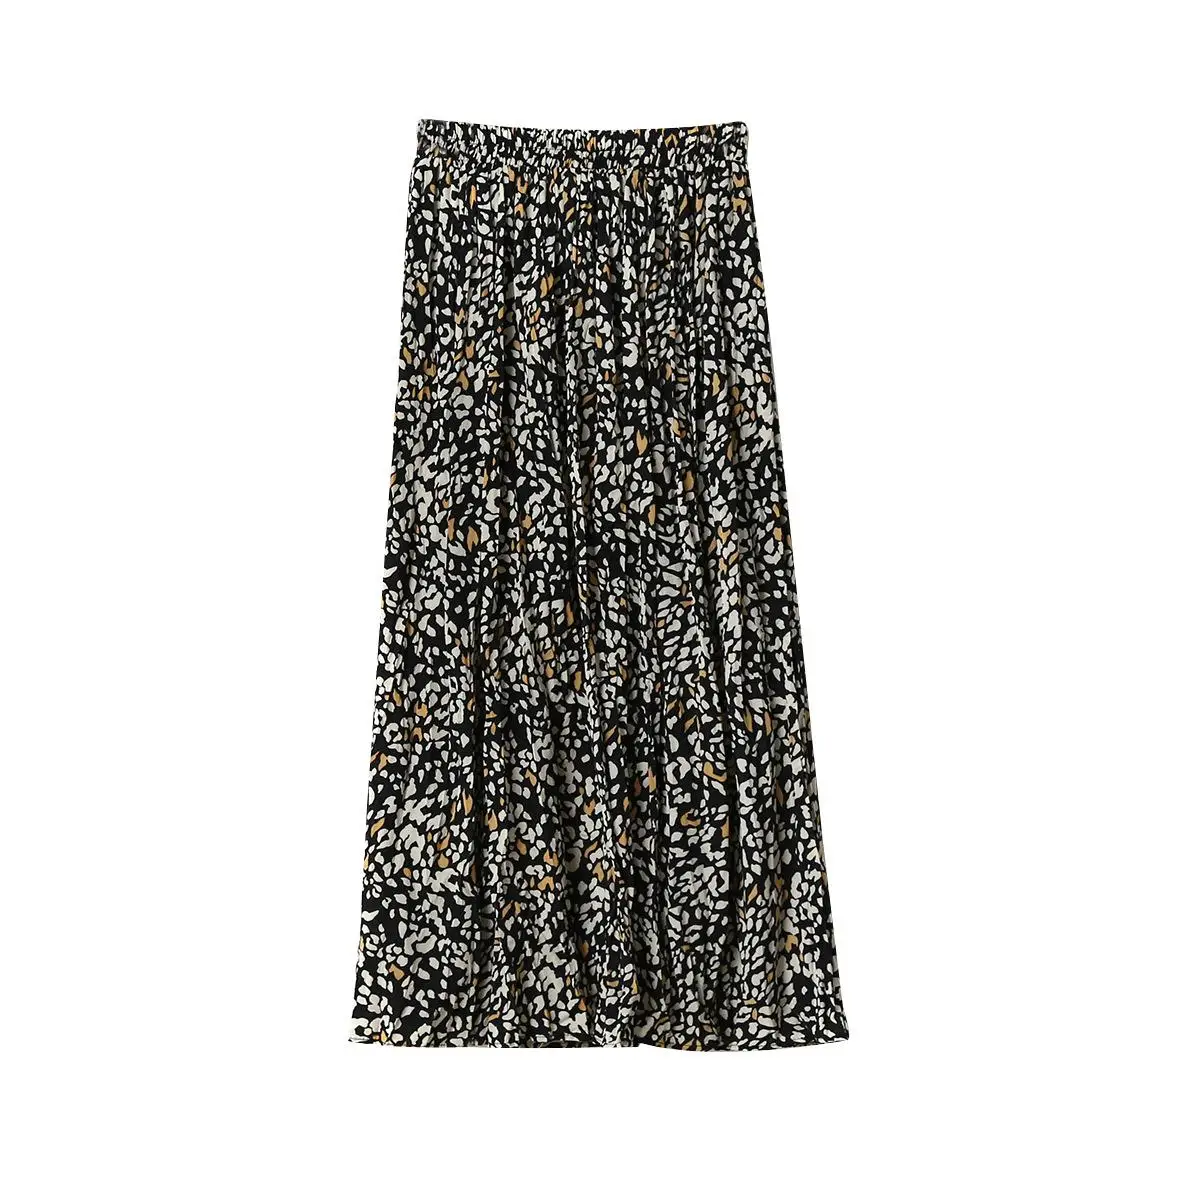 Шифоновая юбка с цветочным принтом женская плиссированная юбка средней длины с высокой талией винтажная трапециевидная пляжная длинная юбка размера плюс осень весна - Цвет: Черный